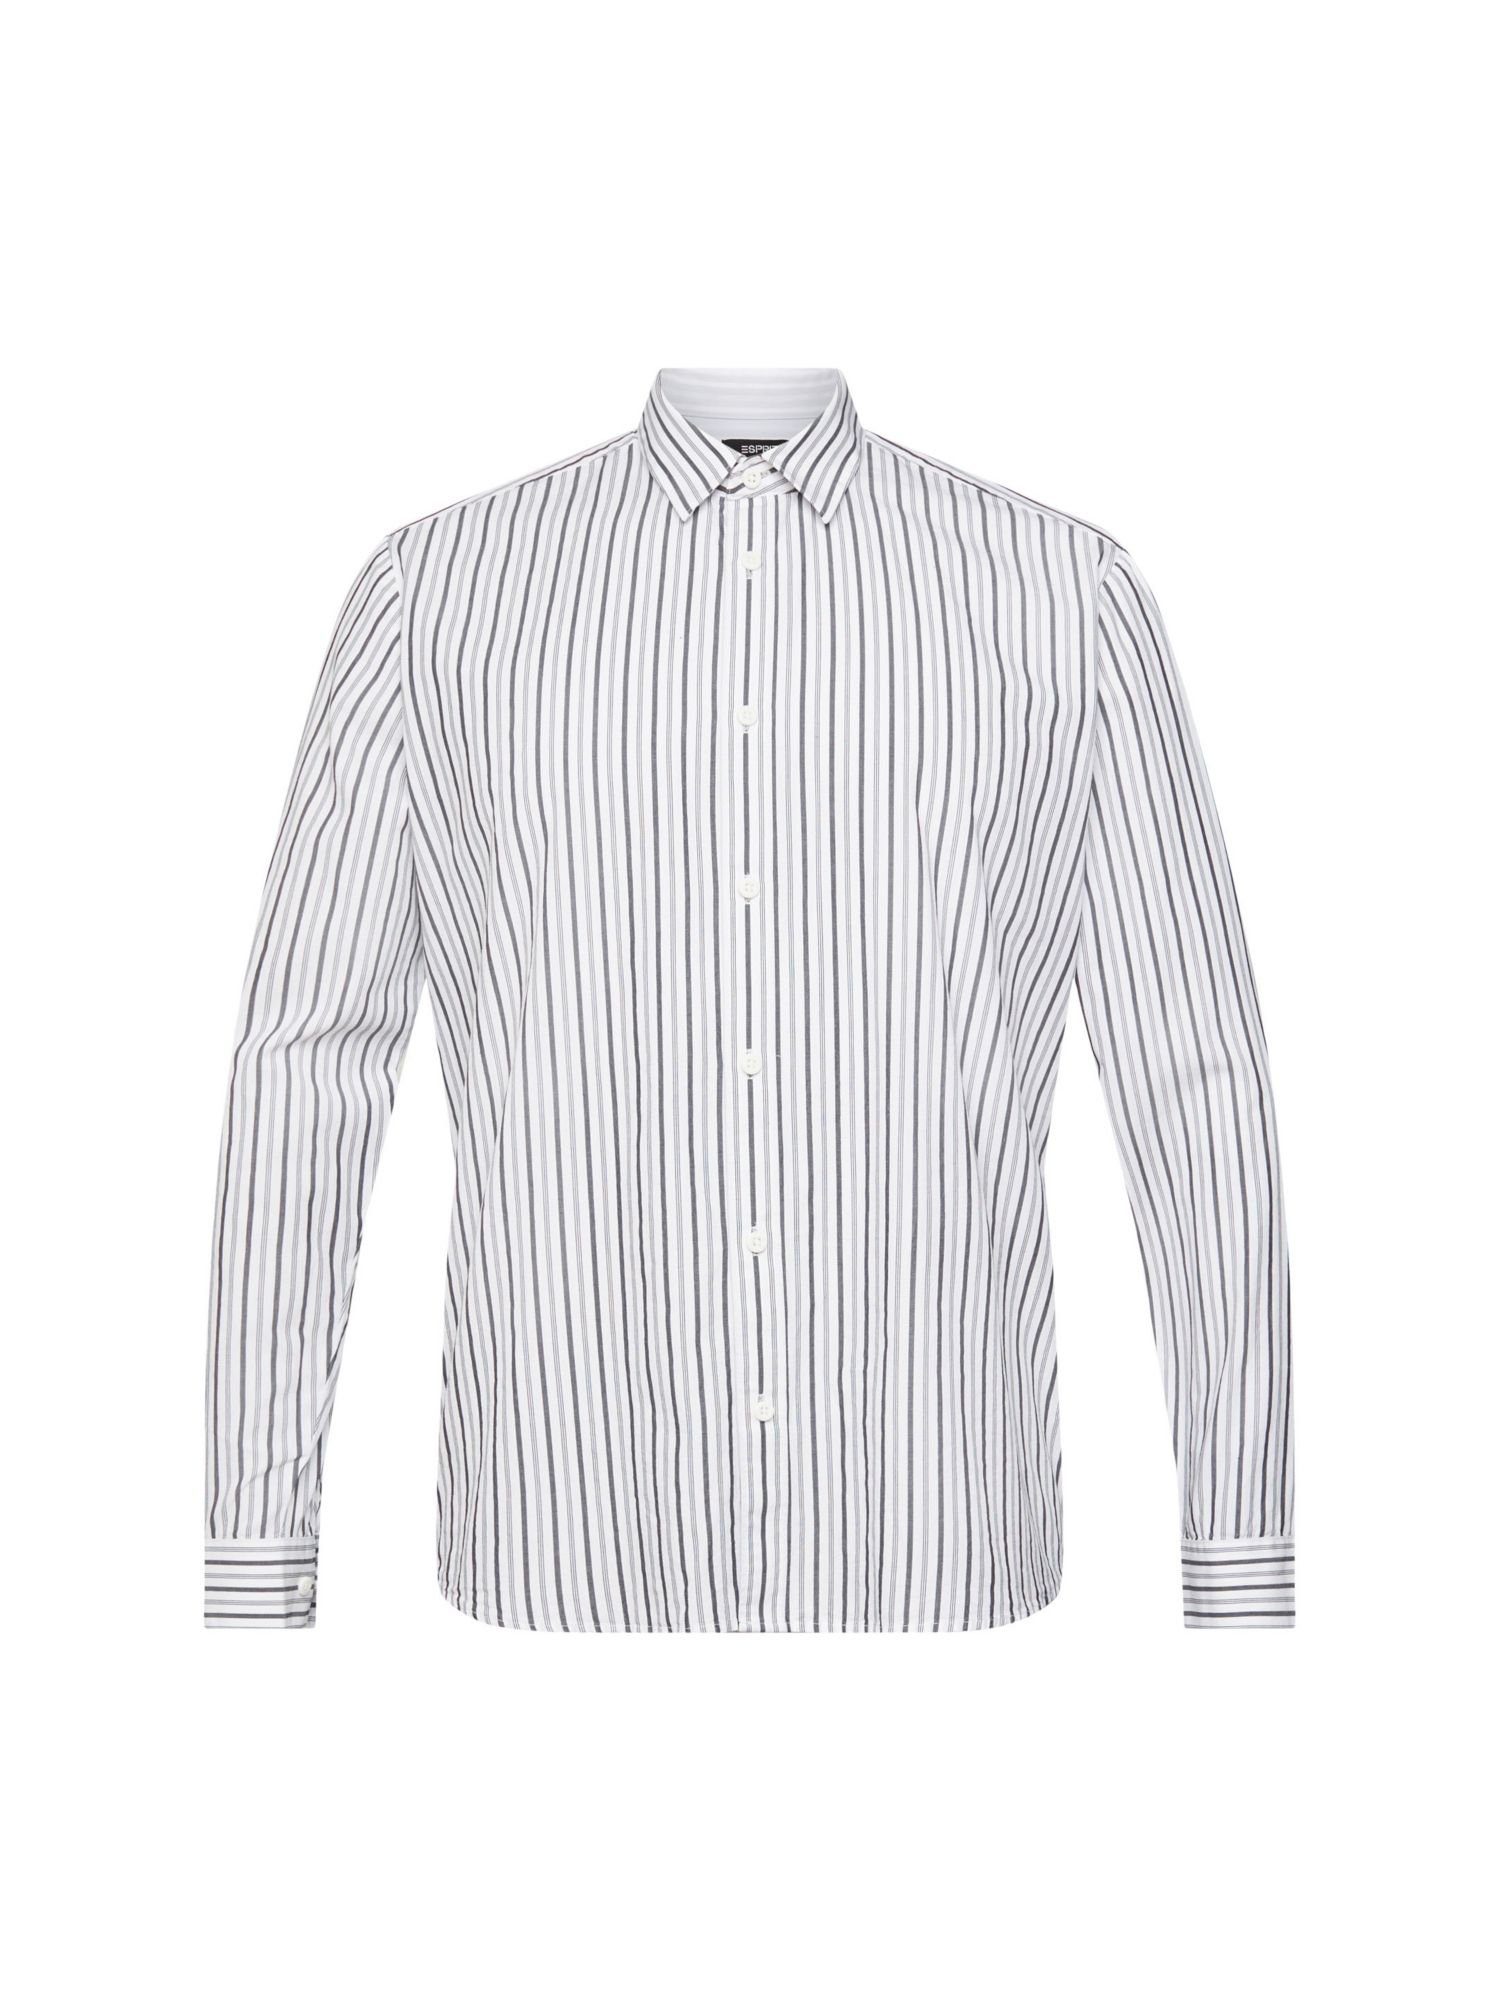 WHITE mit Collection Esprit Streifen Hemd Businesshemd